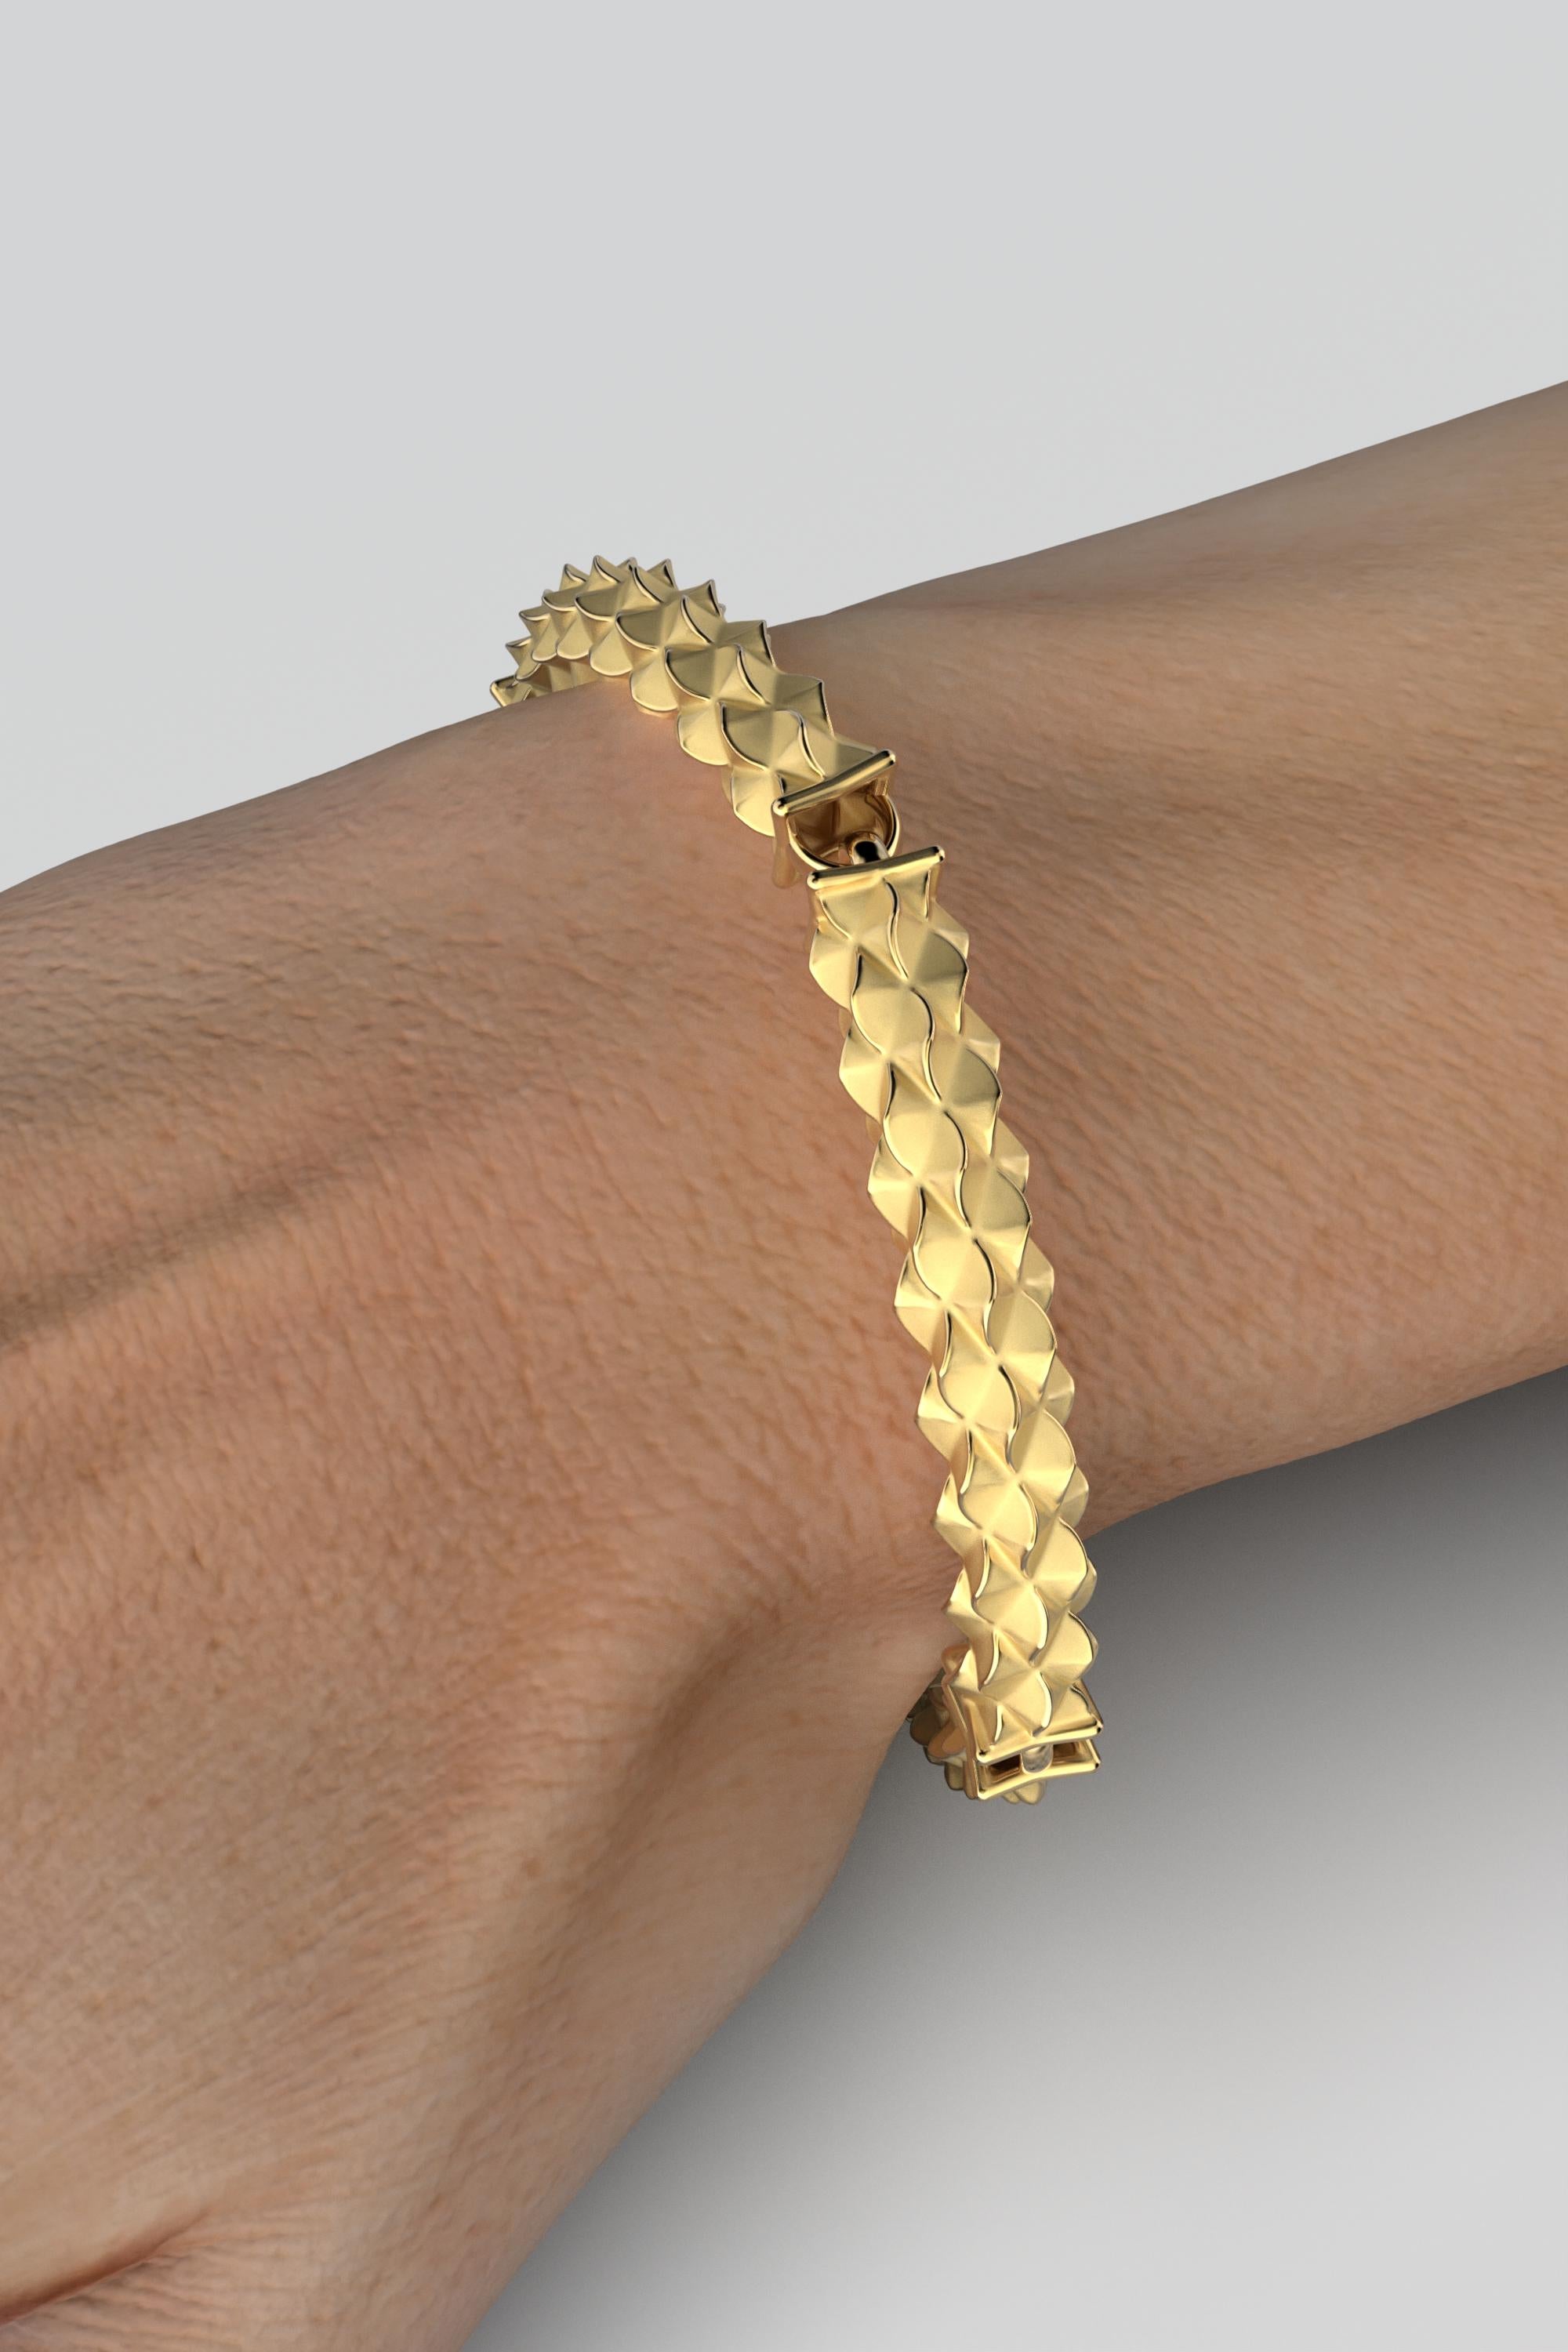 18k Italian Gold Bracelet: Custom Semi-Rigid Design by Oltremare Gioielli In New Condition For Sale In Camisano Vicentino, VI